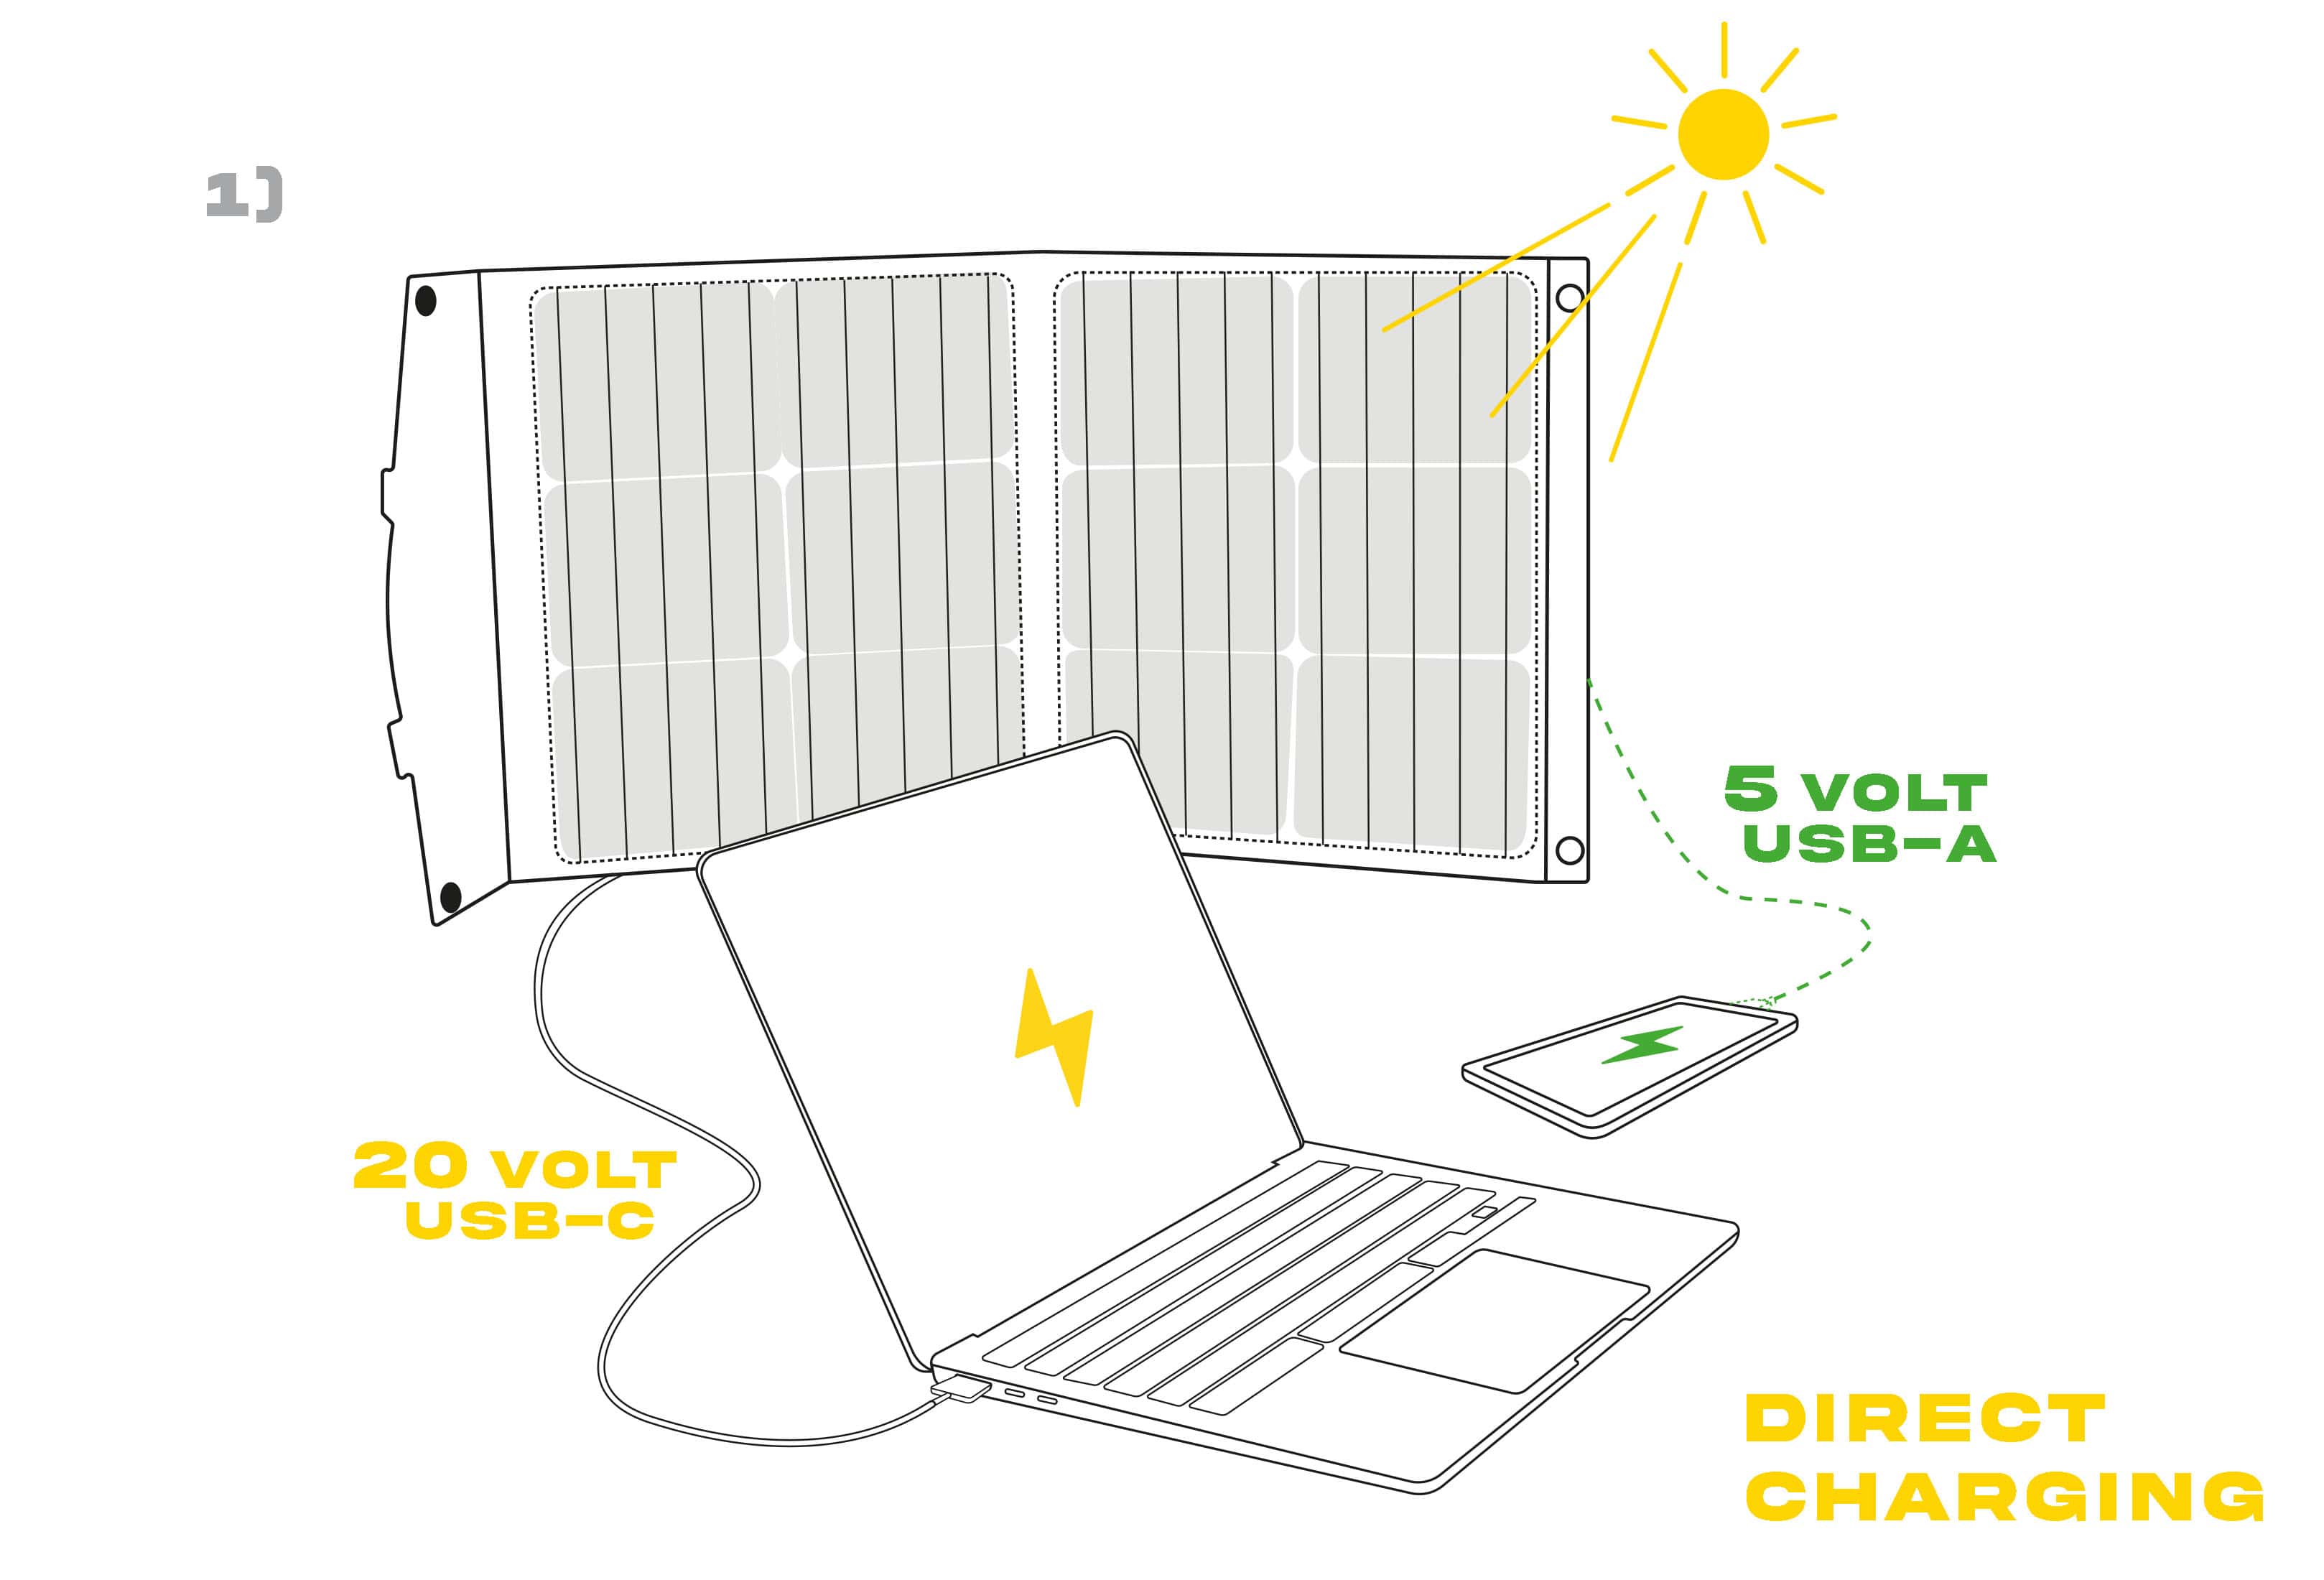 Solar panel under the sun charging a computer ( 20 volt USB-C) and a smartphone ( 5 volt USB-A)